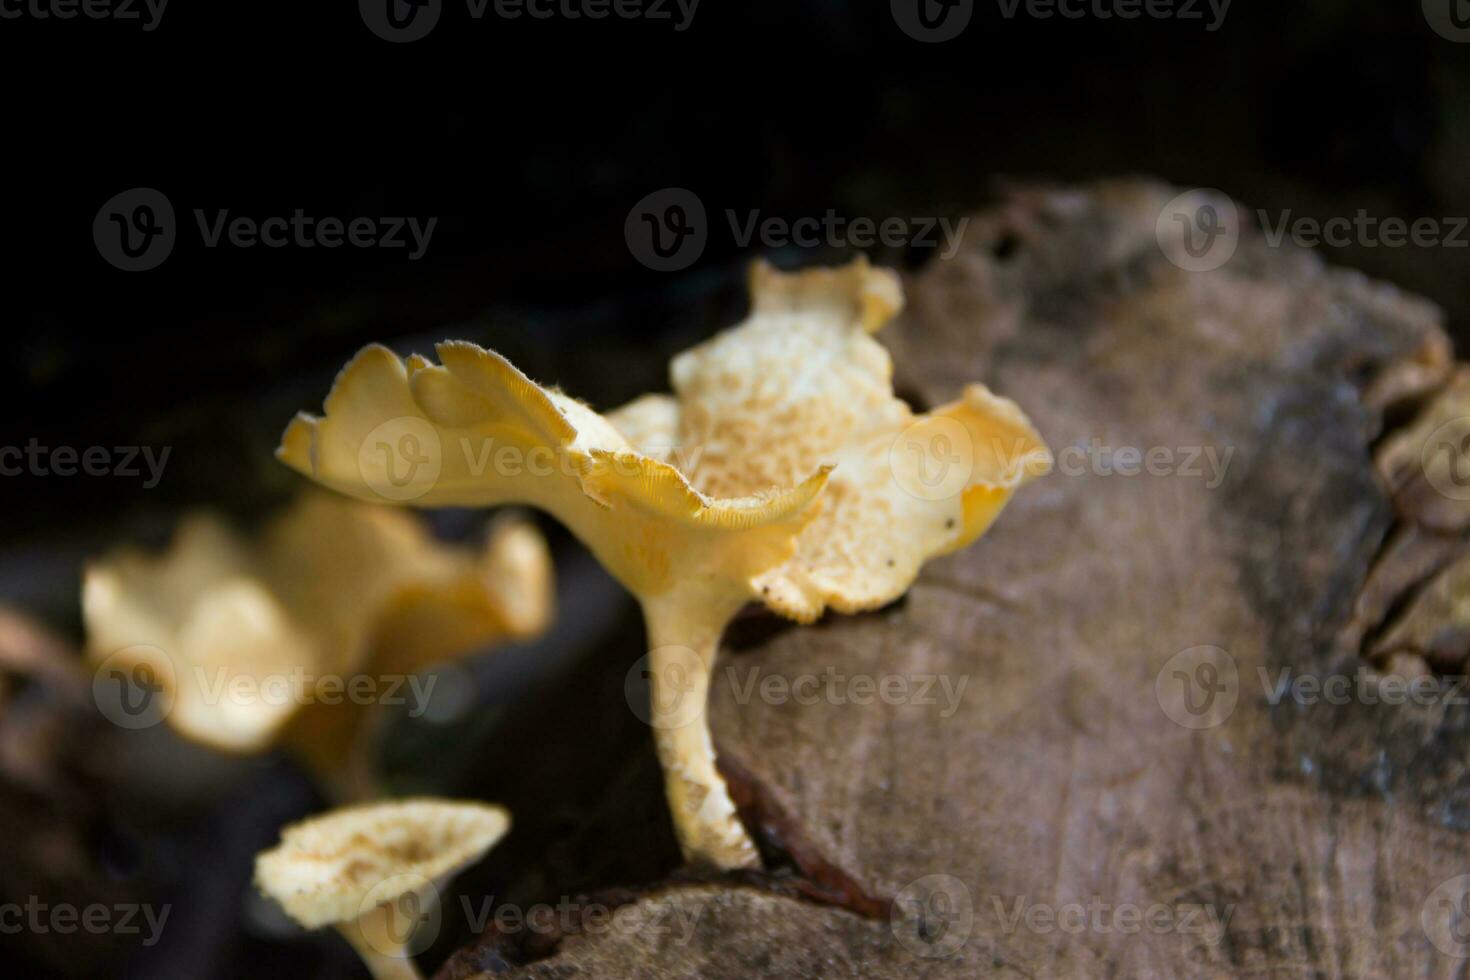 fungos este crescer em a latido do a morto árvore foto